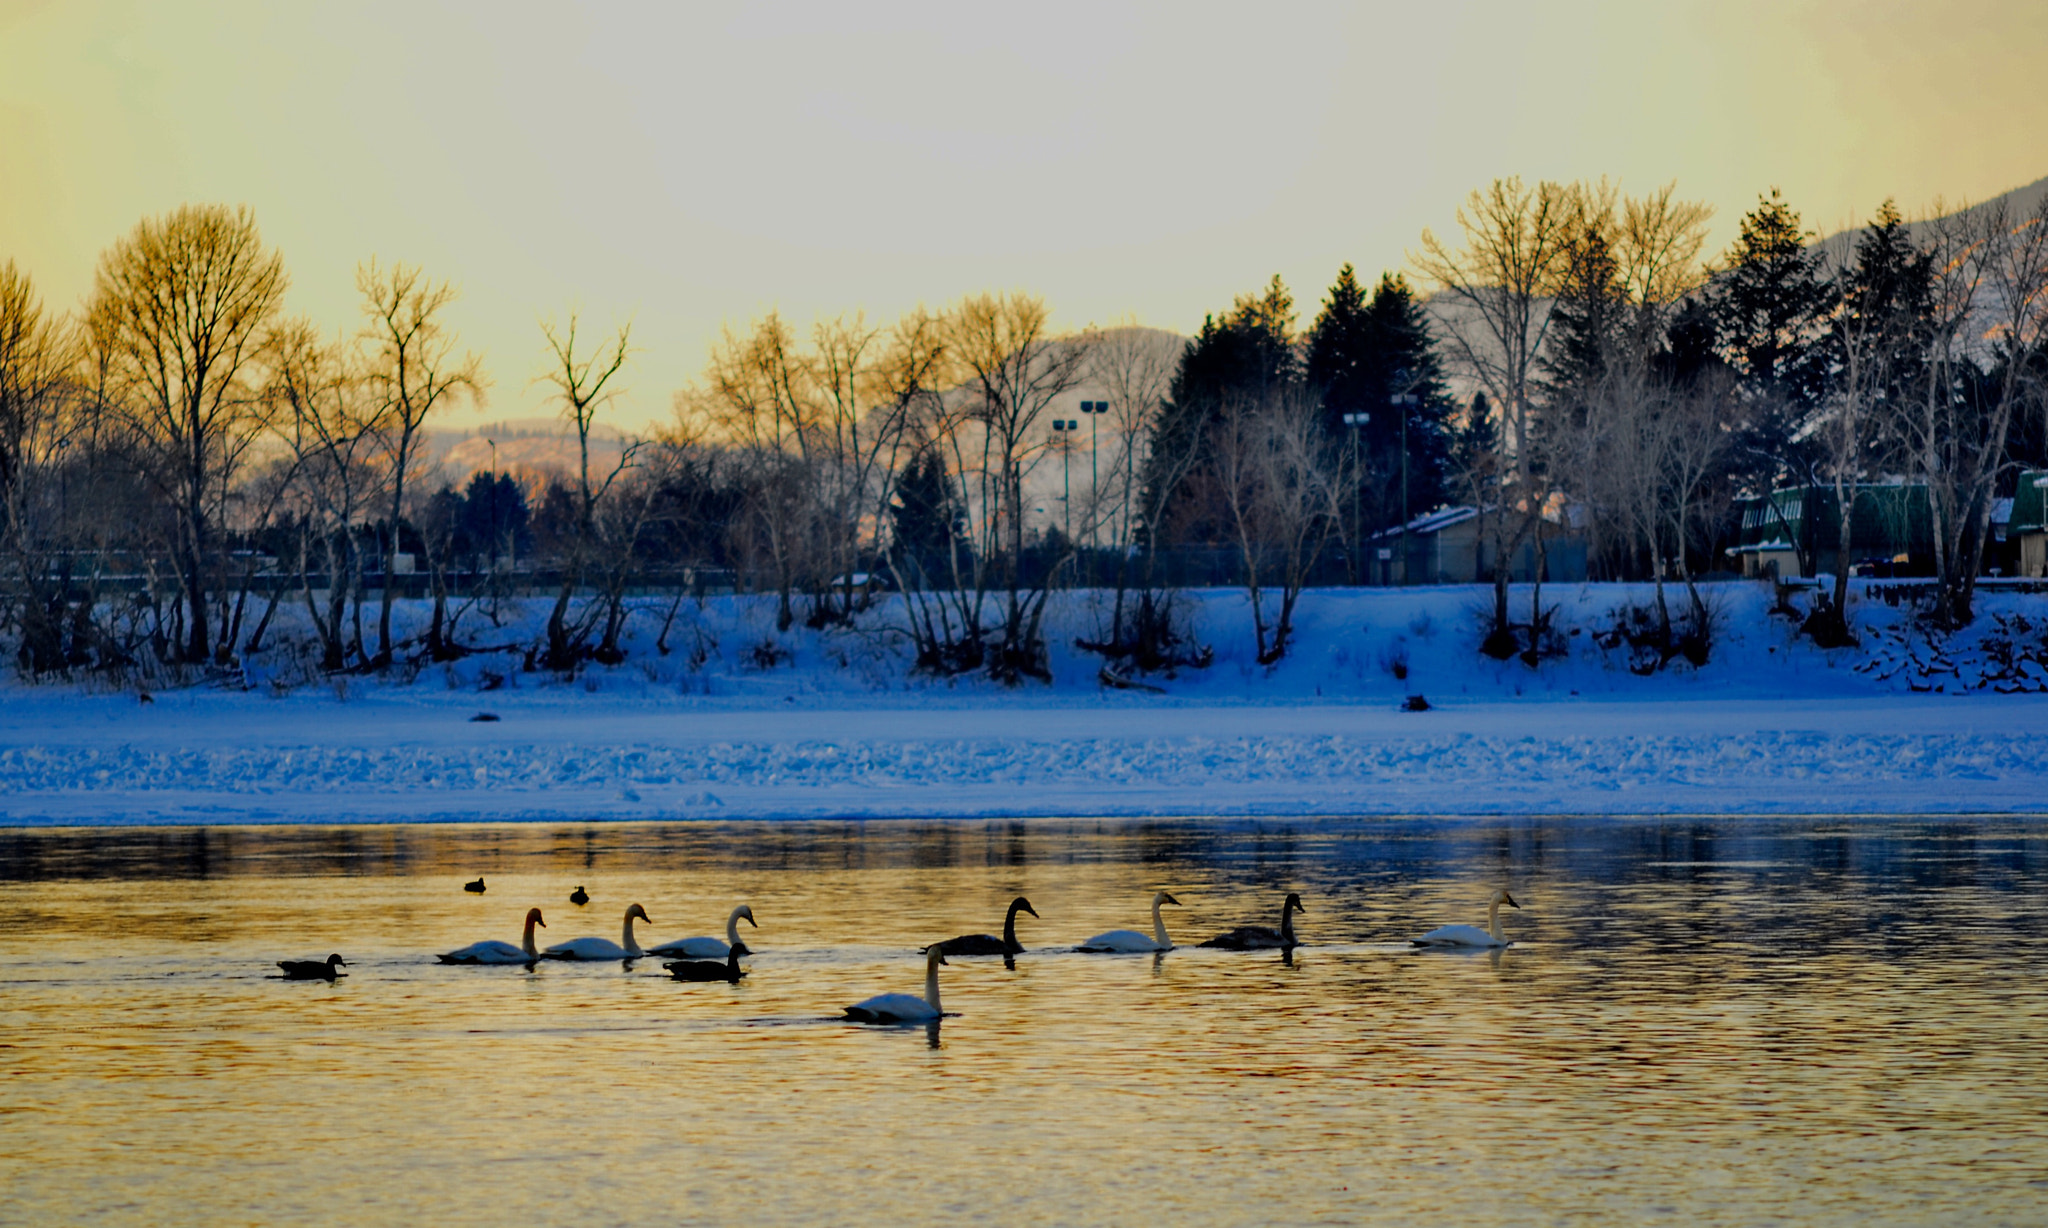 Nikon D7000 + AF Nikkor 50mm f/1.8 sample photo. Swans at dusk in riverside park kamloops, bc canada photography